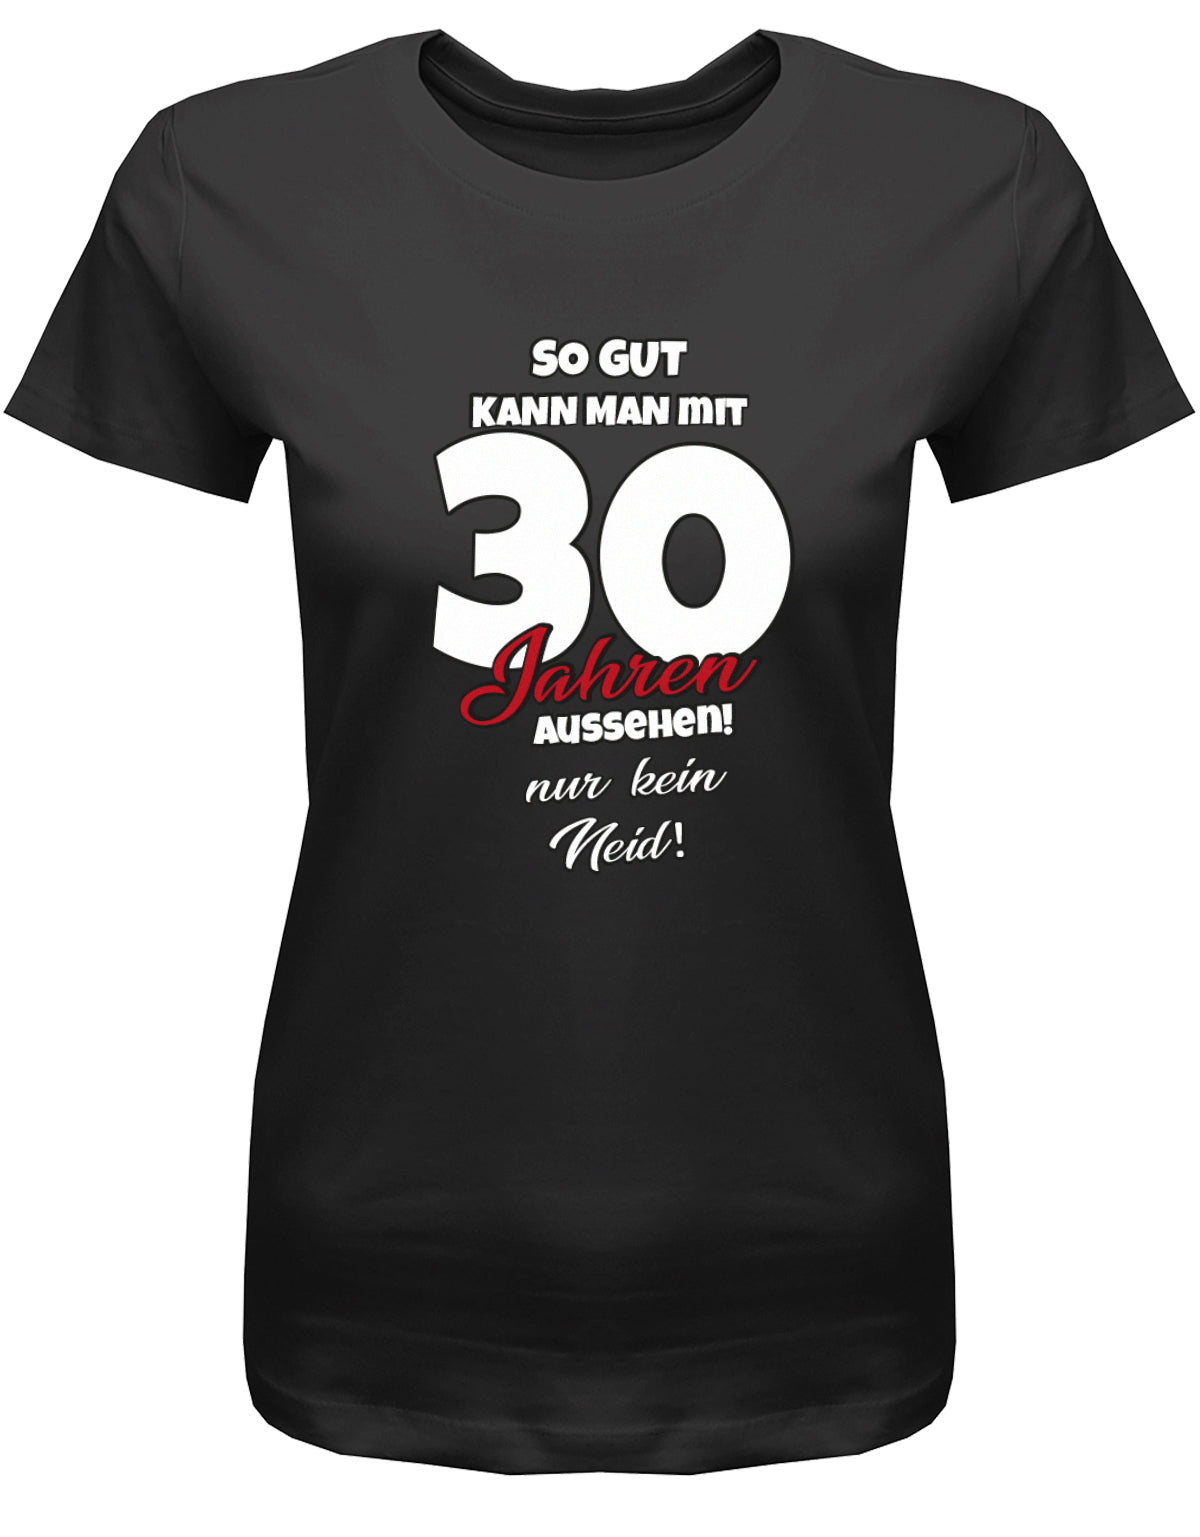 Lustiges T-Shirt zum 30 Geburtstag für die Frau Bedruckt mit So gut kann man mit 30 Jahren aussehen! Nur kein Neid! Schwarz